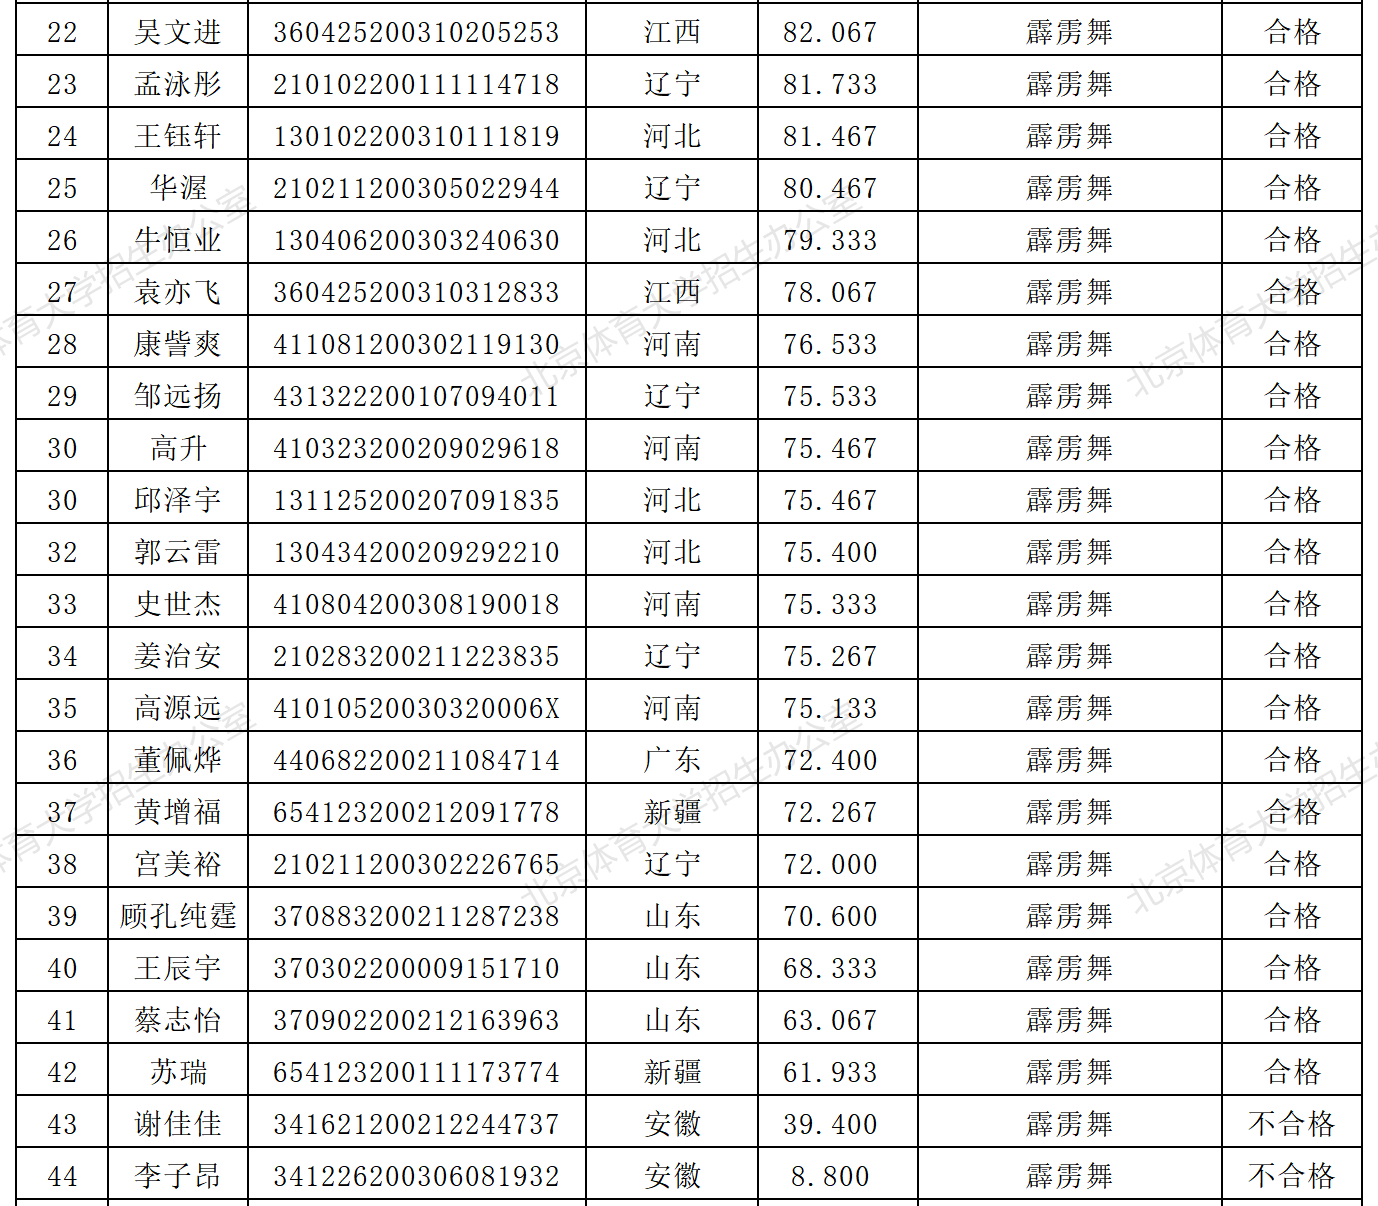 2021年北京体育大学艺术类舞蹈表演专业校考合格名单公示